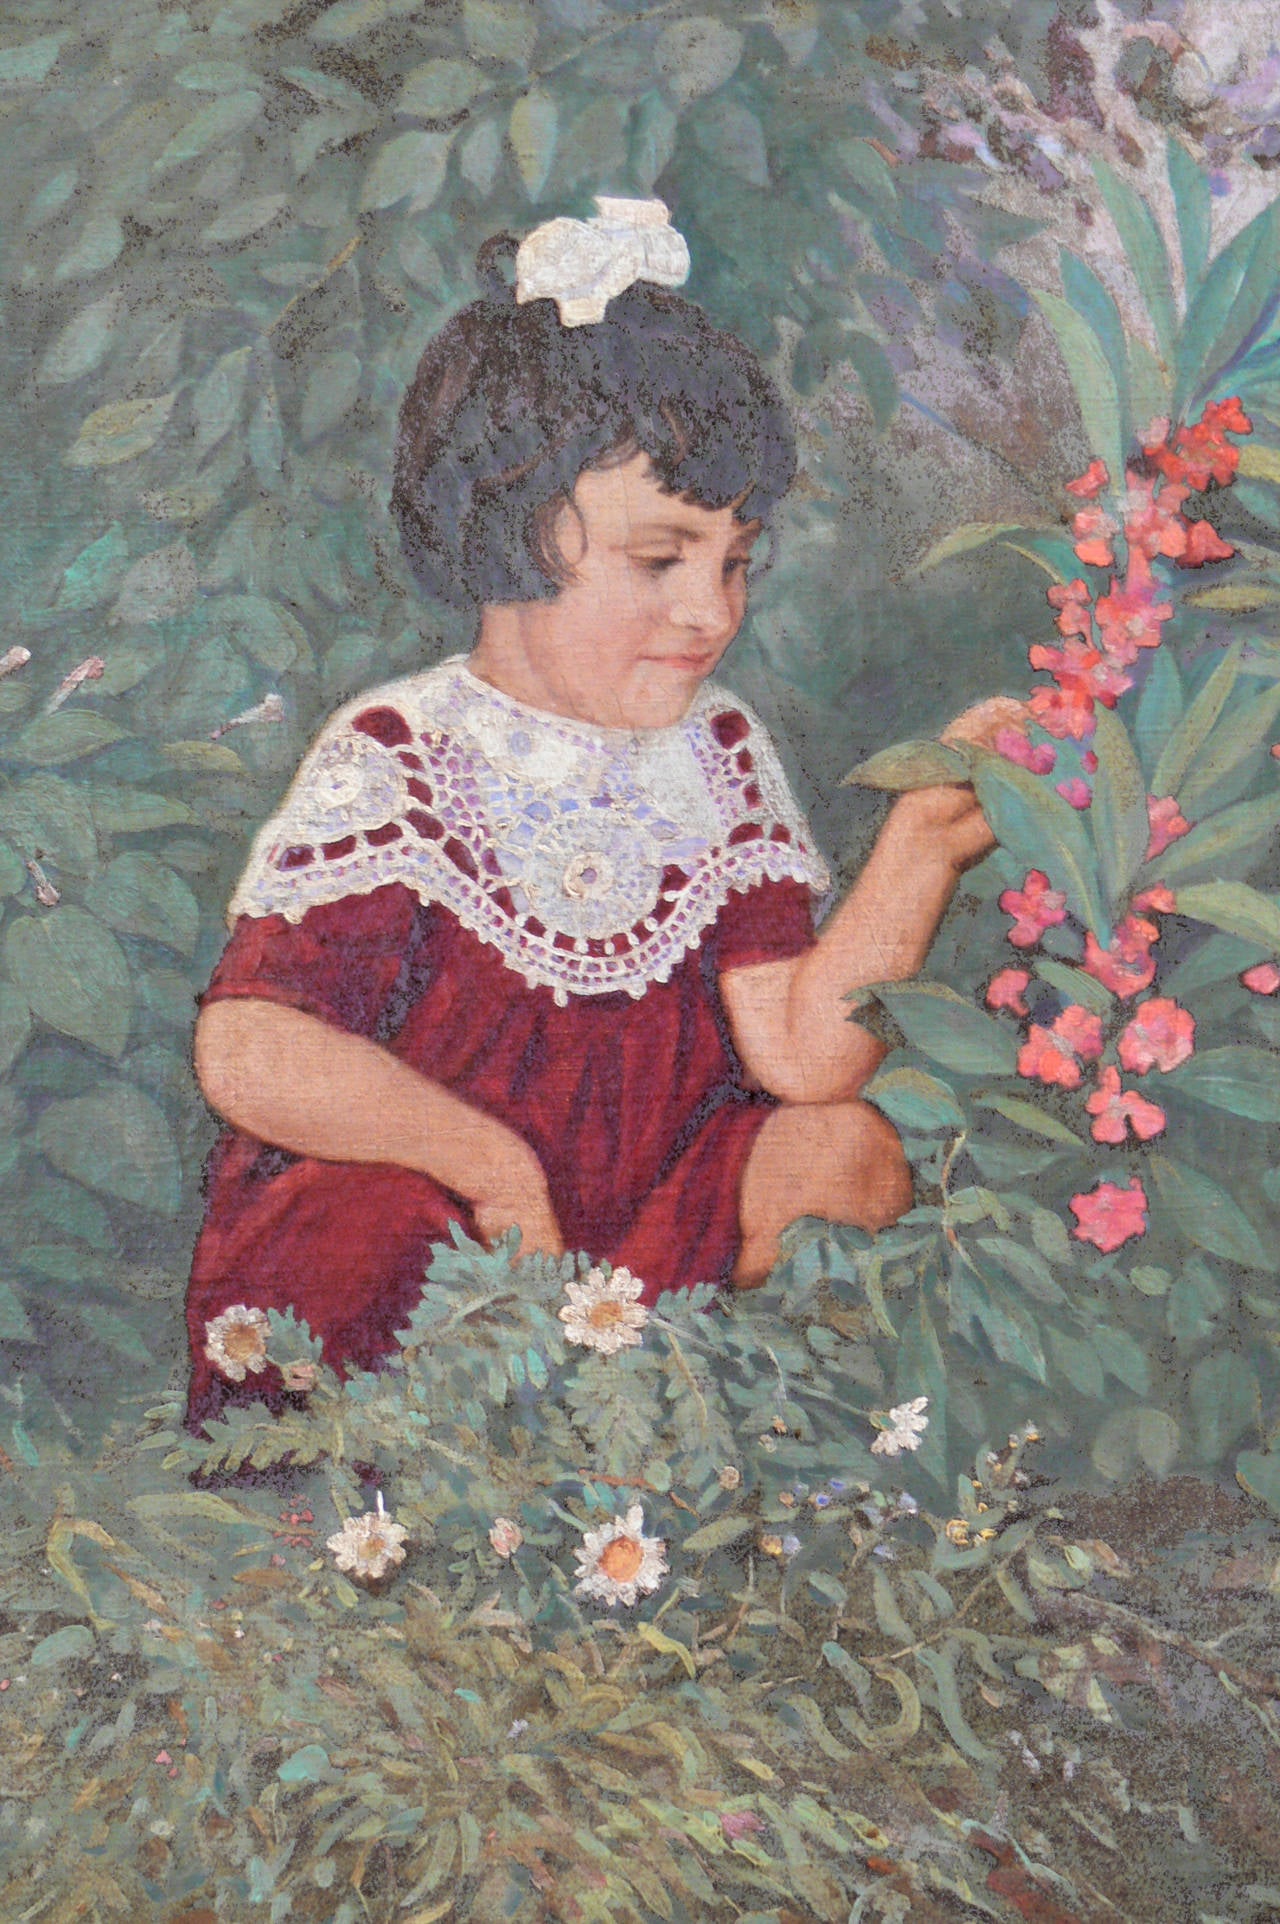 Figurative Painting A. Shukov - Peinture à l'huile sur toile « Une petite fille avec des fleurs dans un jardin », 1952